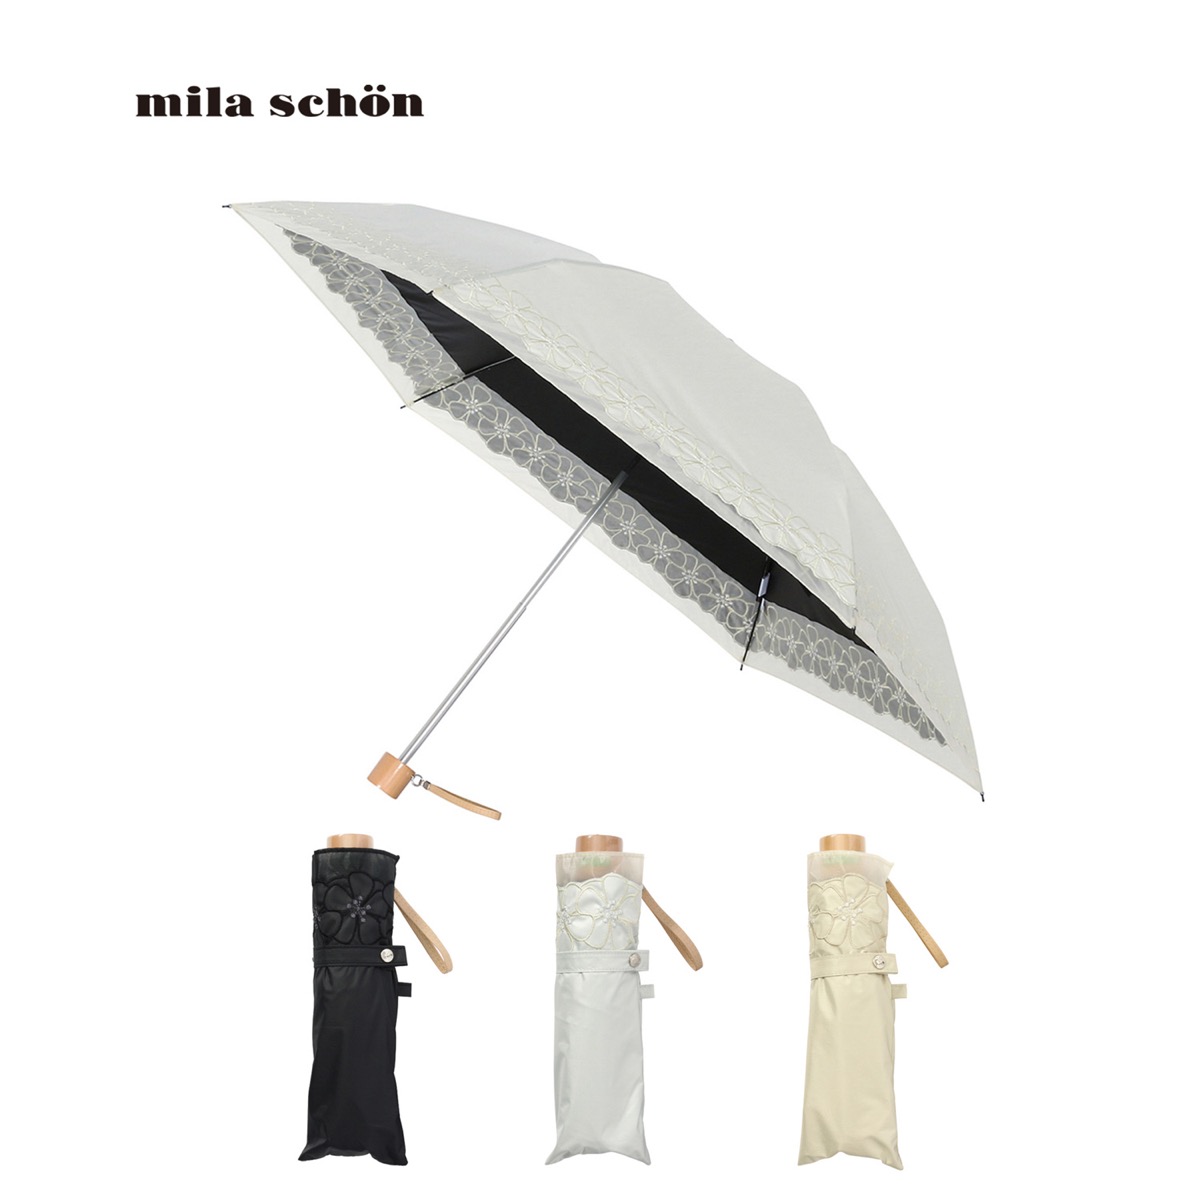 mila schon ミラショーン 晴雨兼用 折りたたみ傘